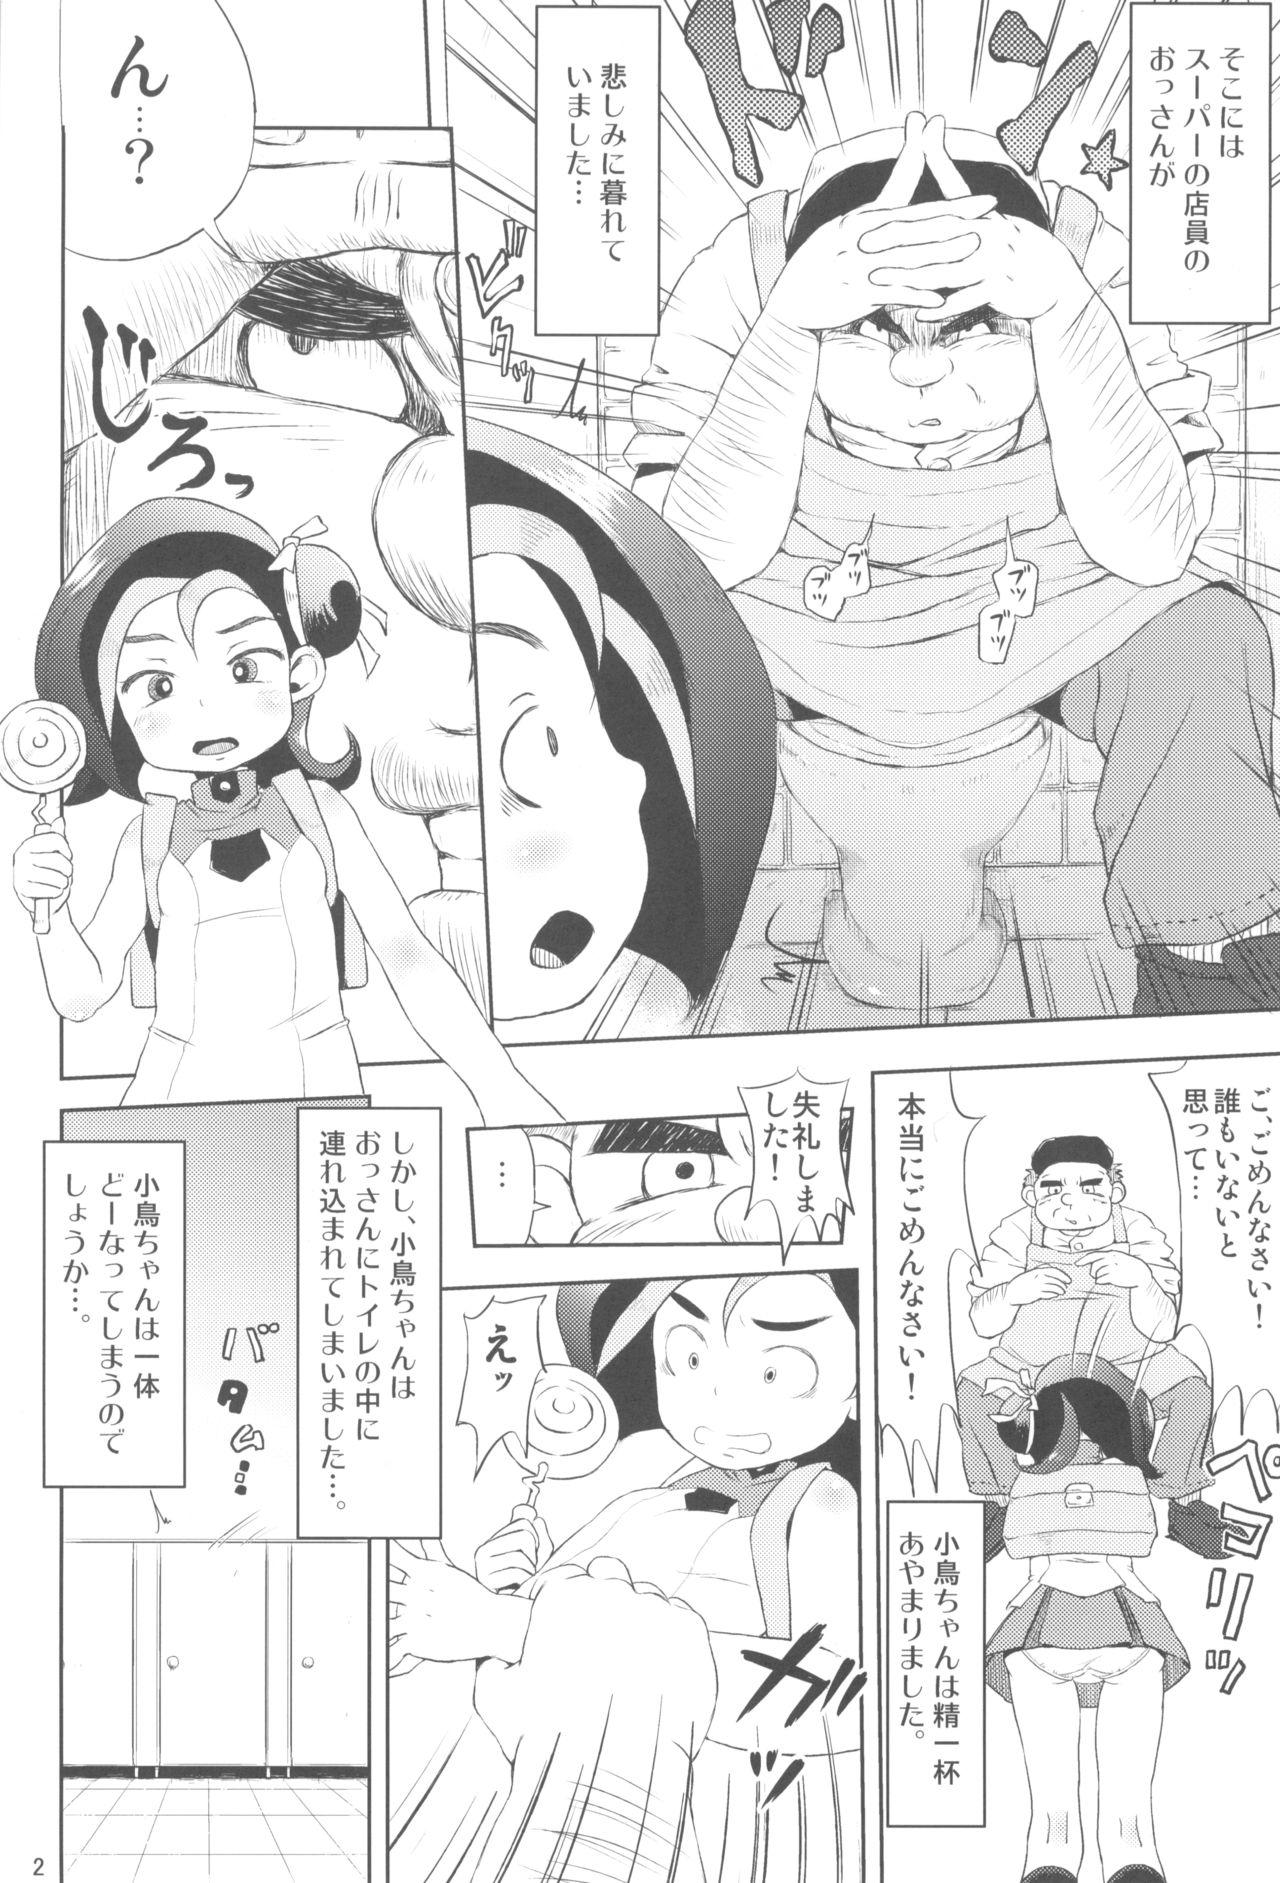 Spy Camera Todo no Tsumari XX desu! - Yu-gi-oh zexal Twink - Page 4